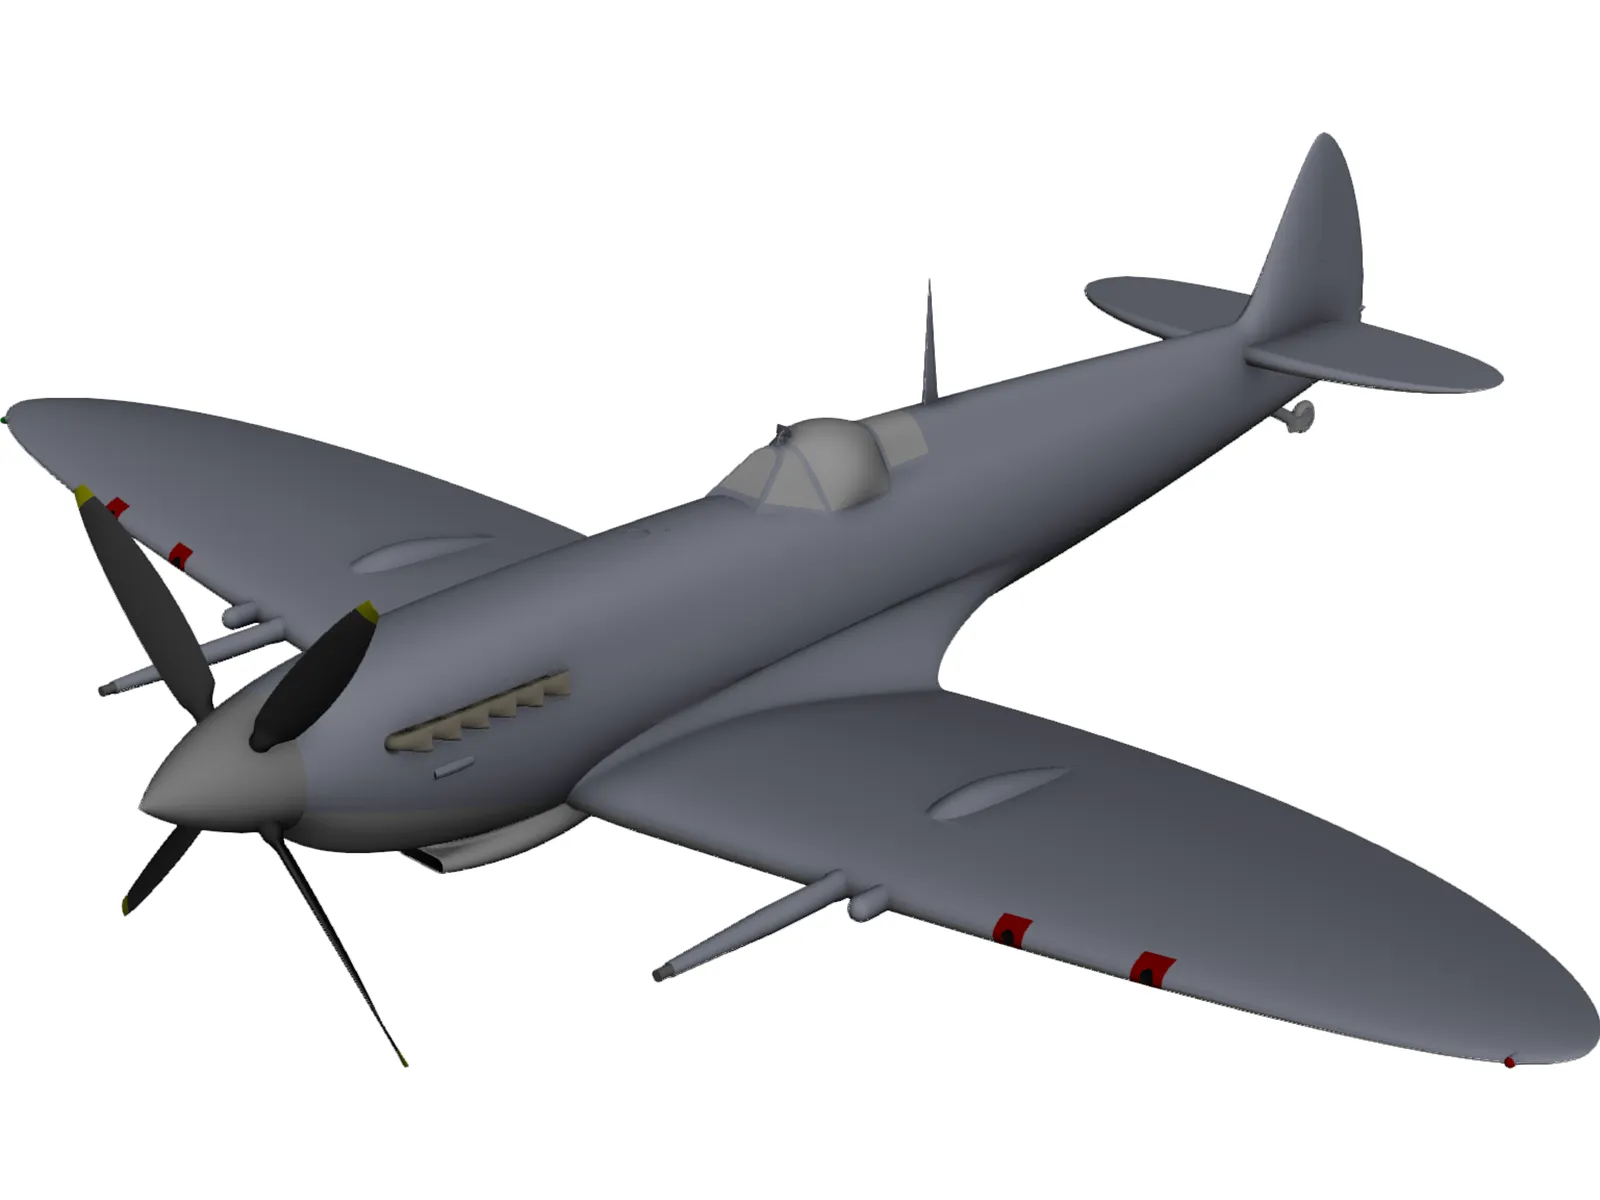 Spitfire 3D Model